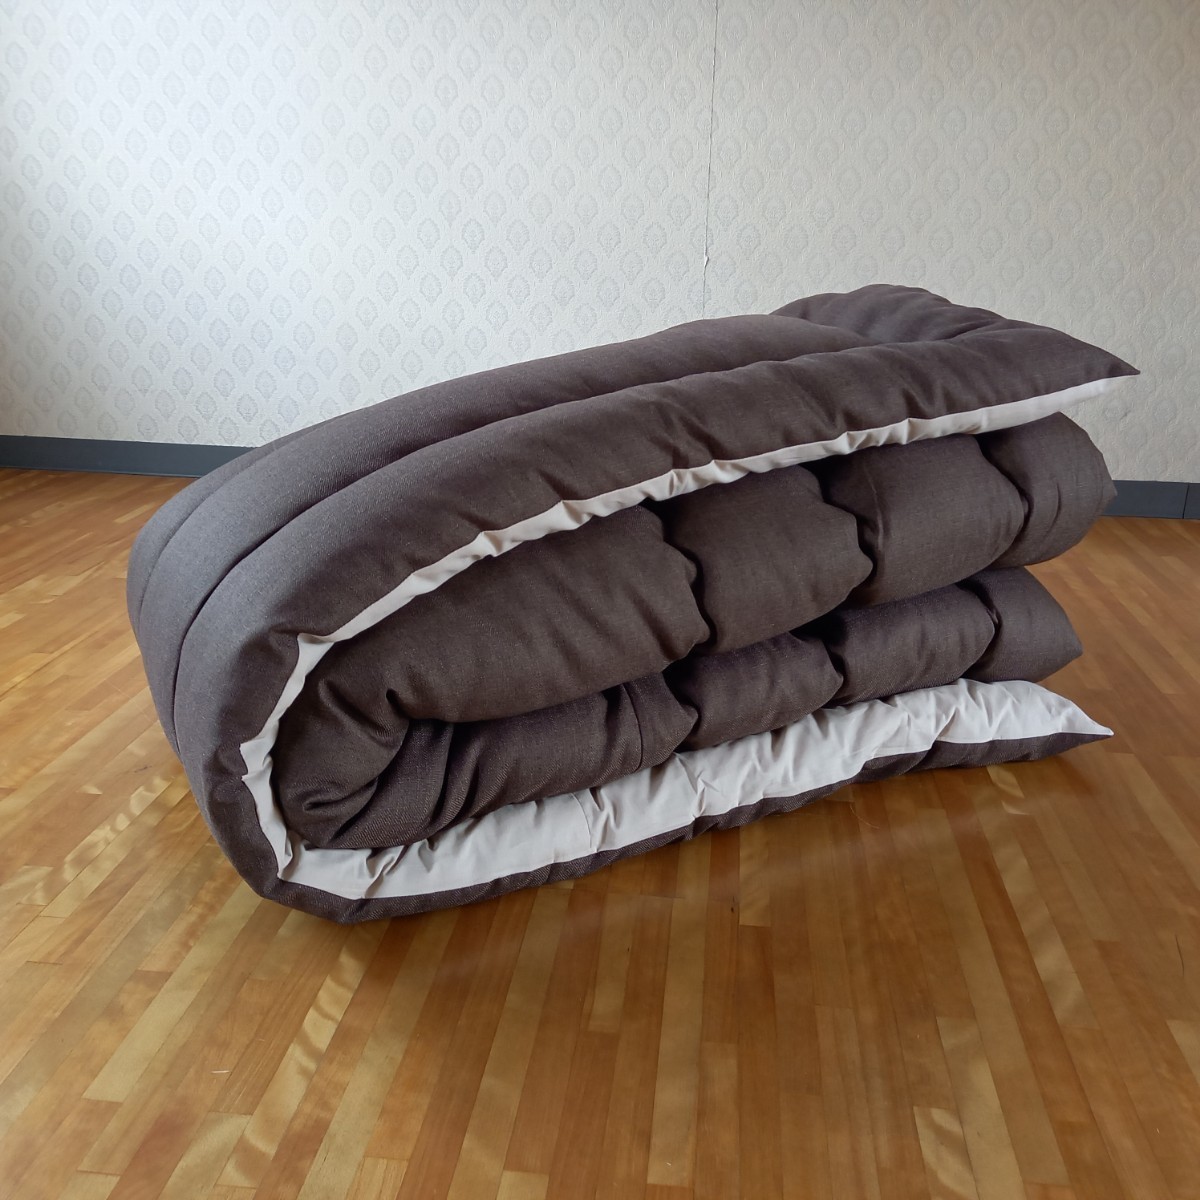  супер водоотталкивающая отделка котацу futon квадратный толстый ткань объем толщина .. Brown чистый безопасность сделано в Японии ( пуховый футон ватное одеяло матрас футон подушка ) выставляется..